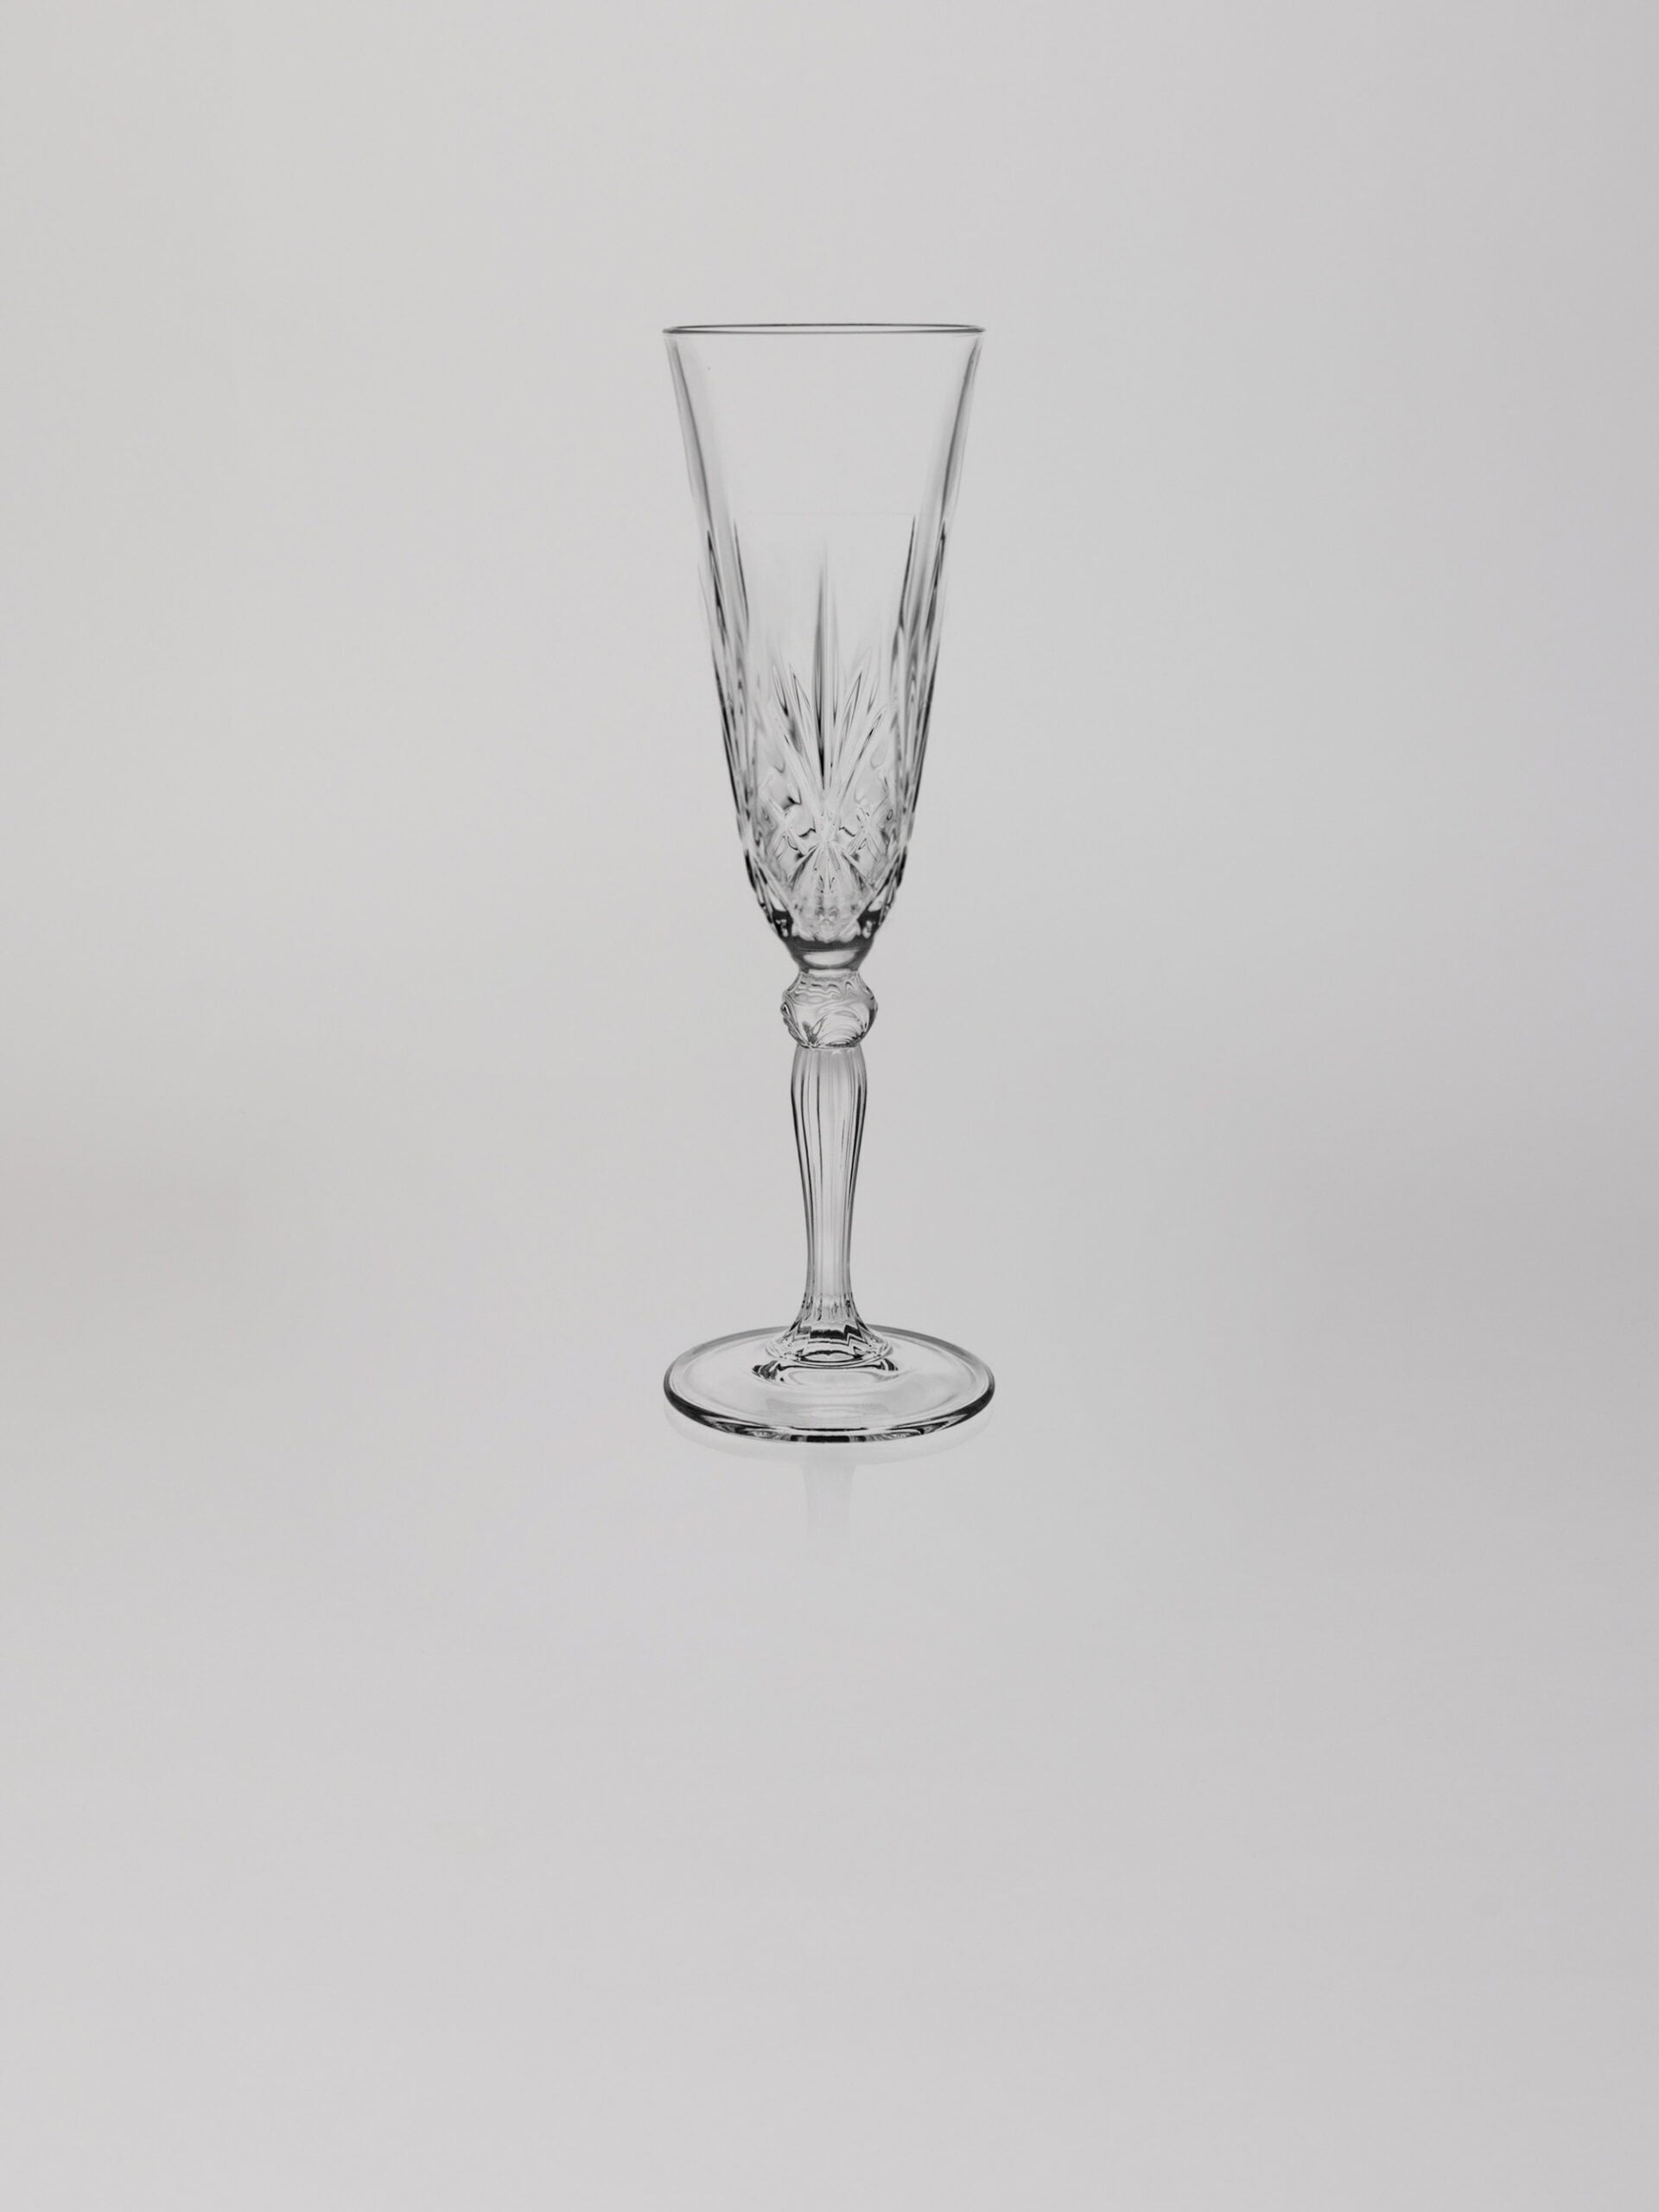  כוס שמפנייה גבוהה על רקע אפור בהיר